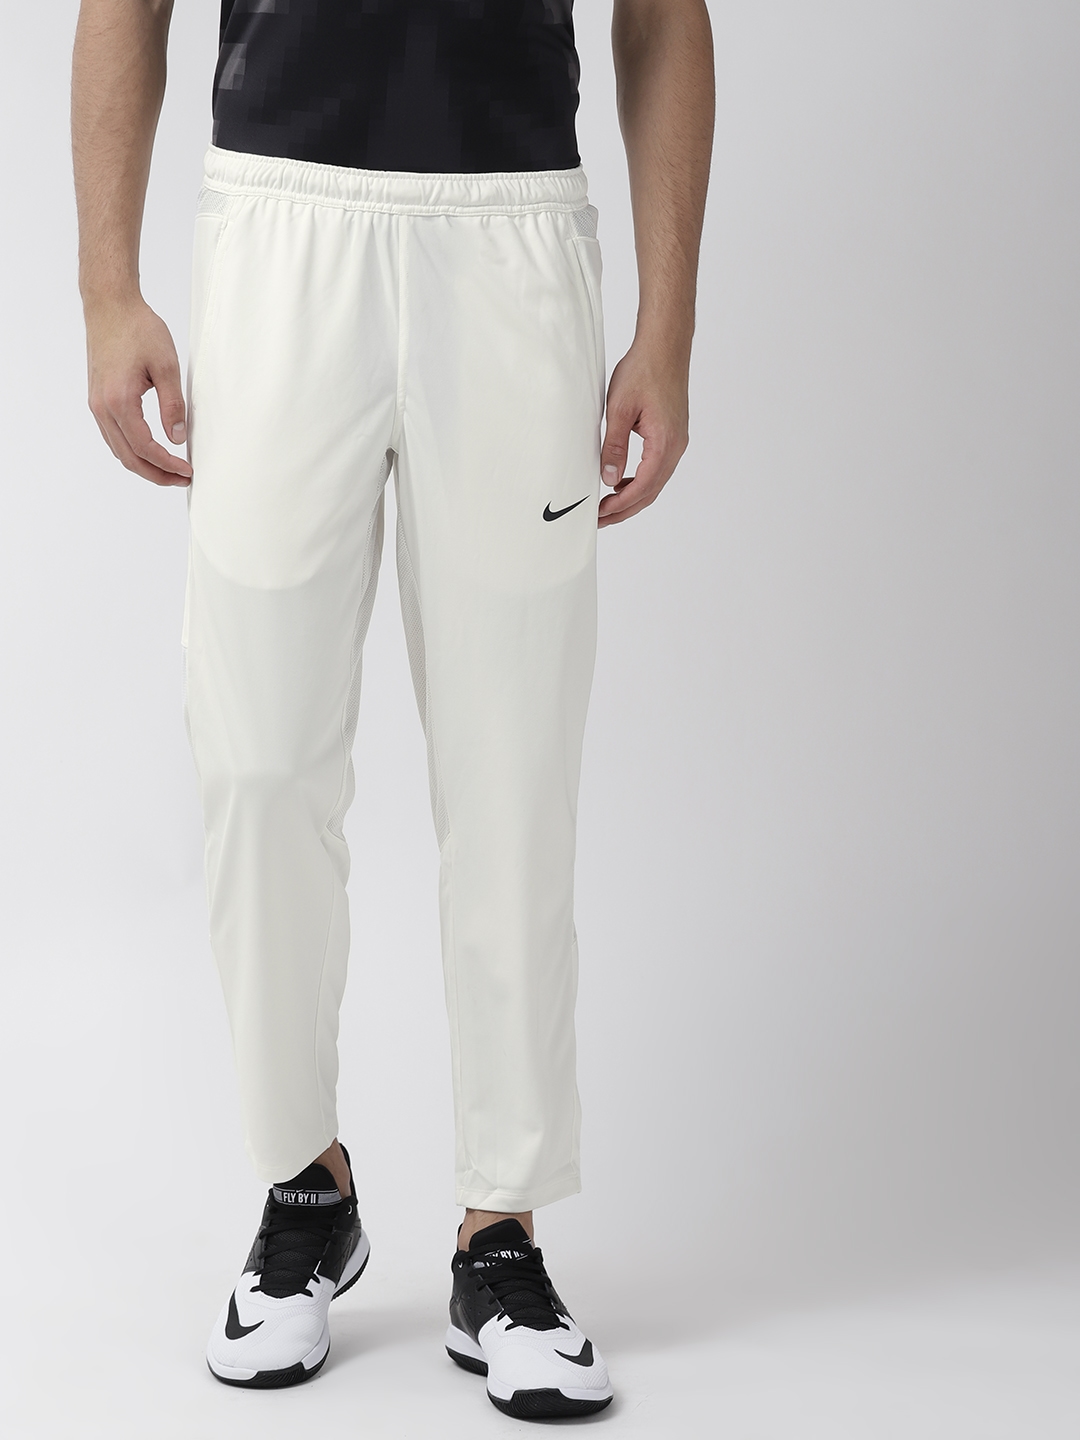 NIKE Solid Men White Track Pants  Buy White NIKE Solid Men White Track  Pants Online at Best Prices in India  Flipkartcom